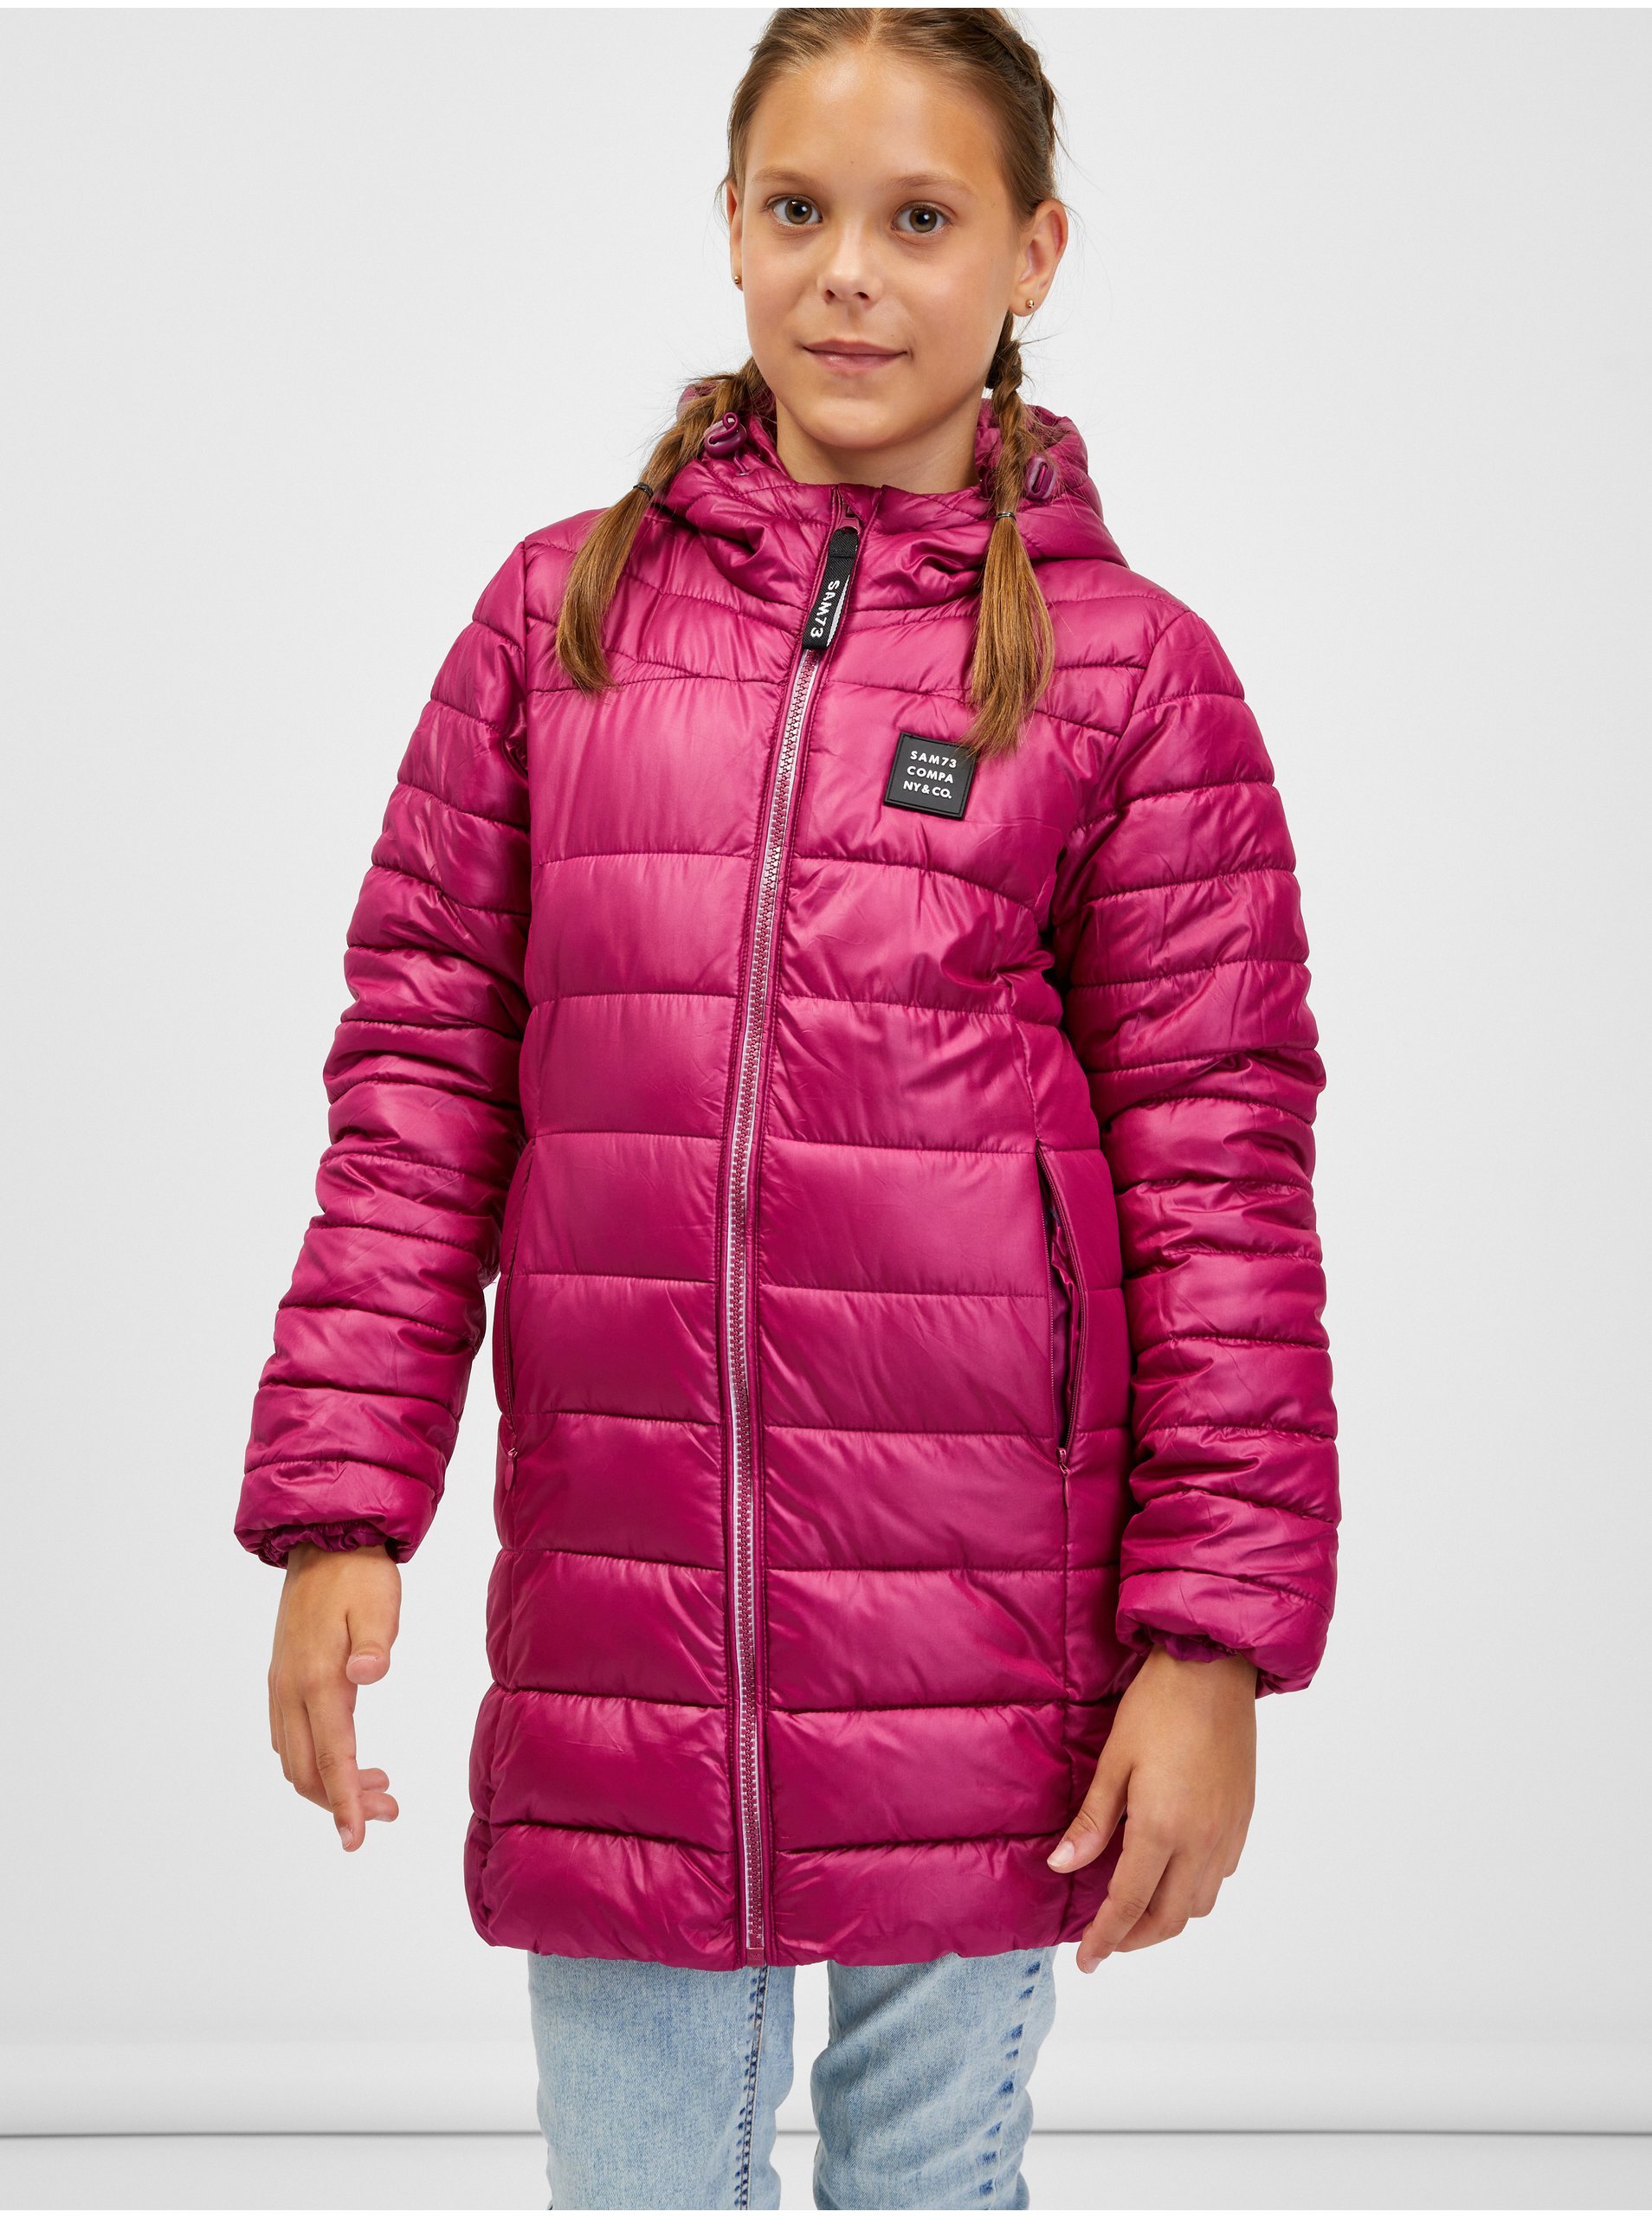 Lacno Tmavoružový dievčenský prešívaný kabát s kapucňou SAM 73 Nadine